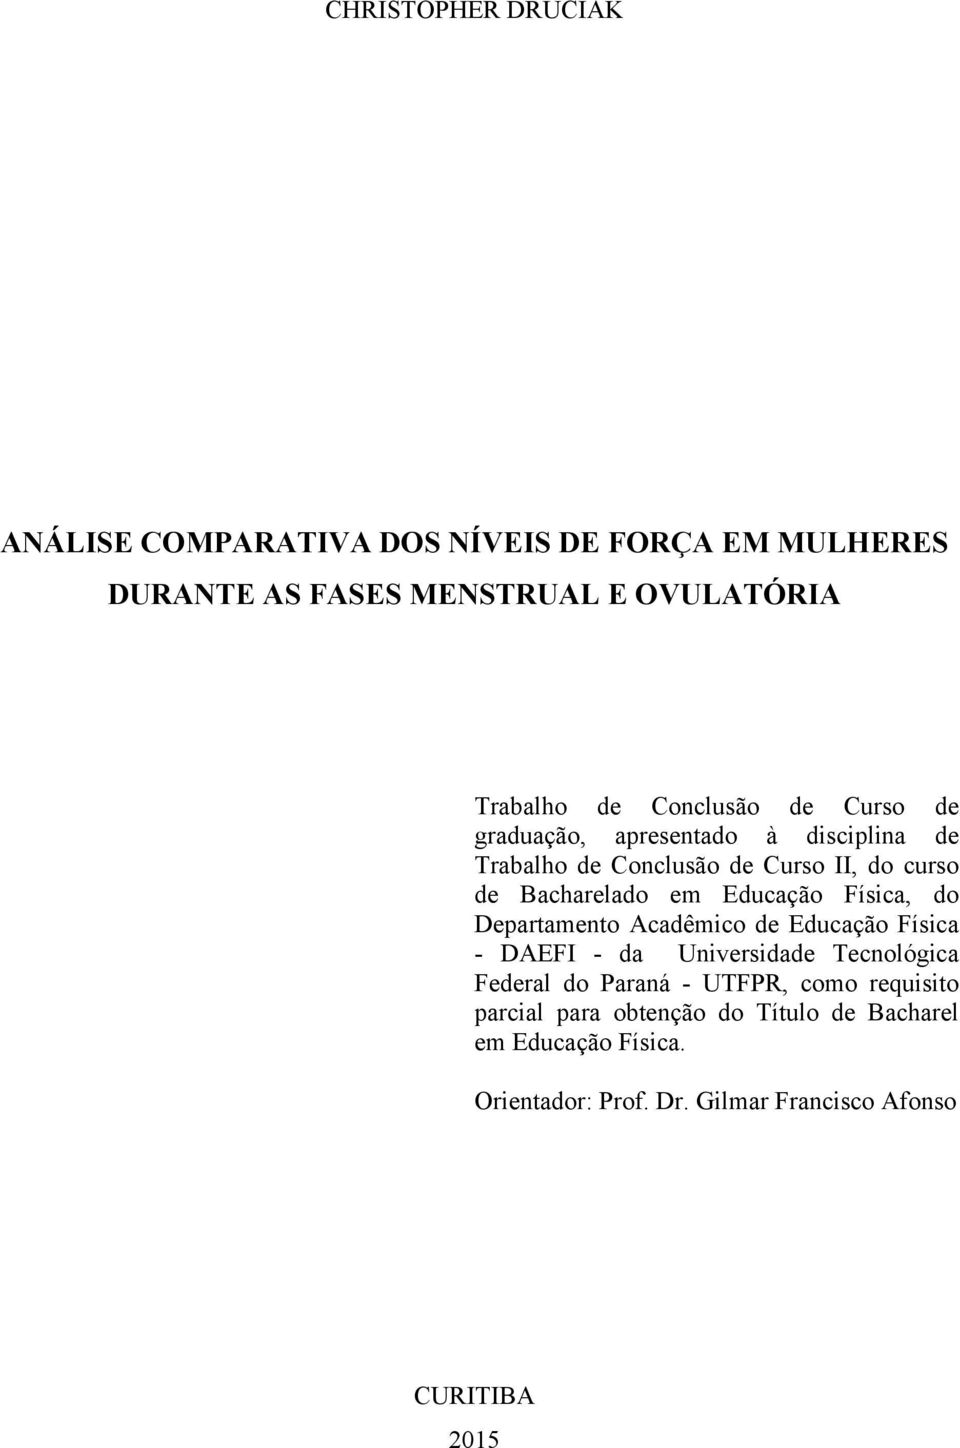 Educação Física, do Departamento Acadêmico de Educação Física - DAEFI - da Universidade Tecnológica Federal do Paraná - UTFPR,